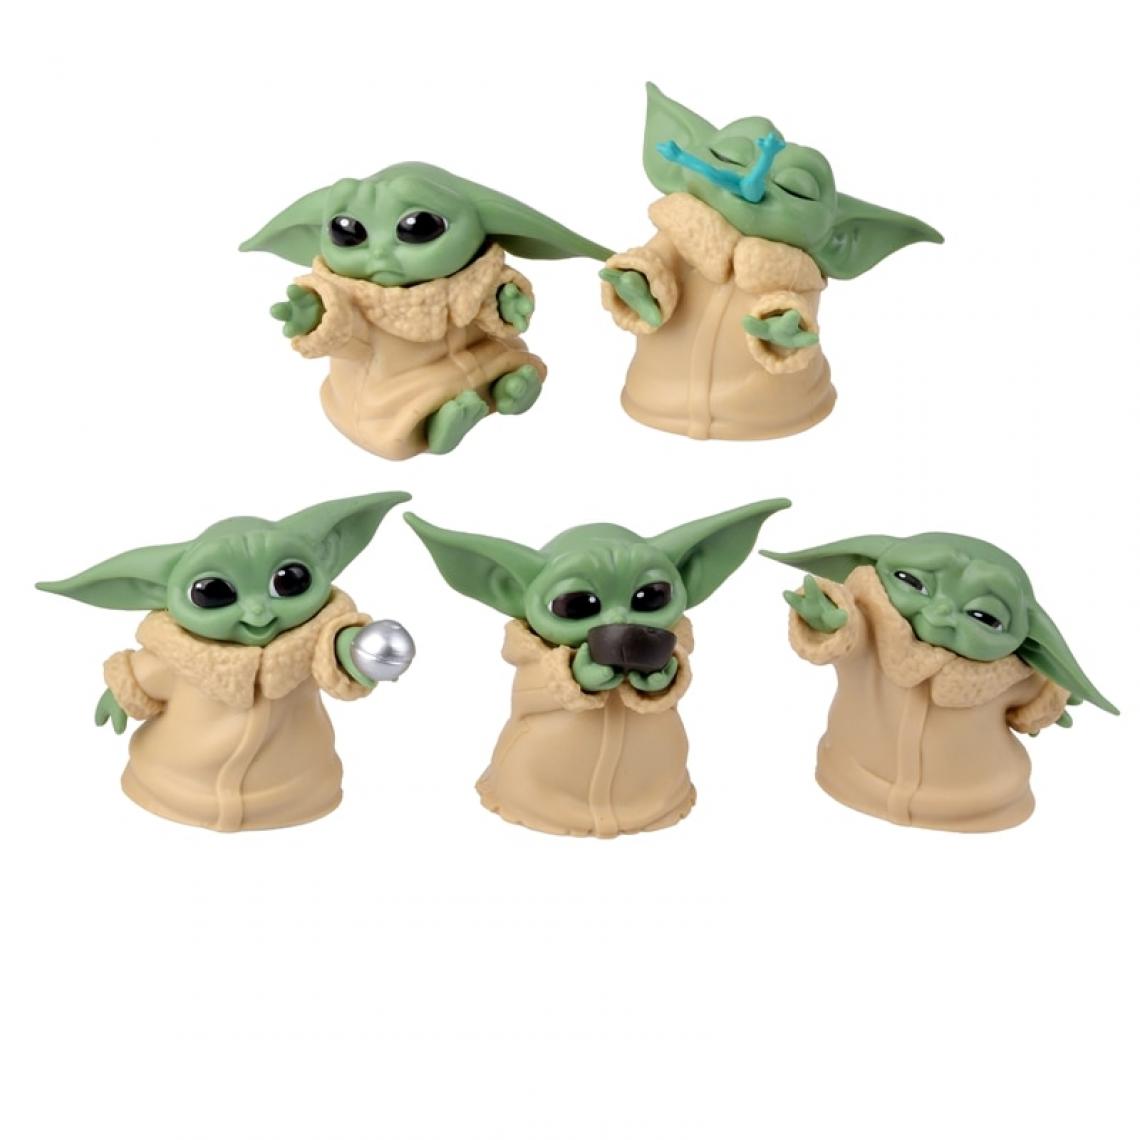 Universal - Animaux 5 Pièces/Set Star Wars Baby Yoda Collection Action Toys Cadeaux d'anniversaire pour enfants | Action People(Coloré) - Mangas